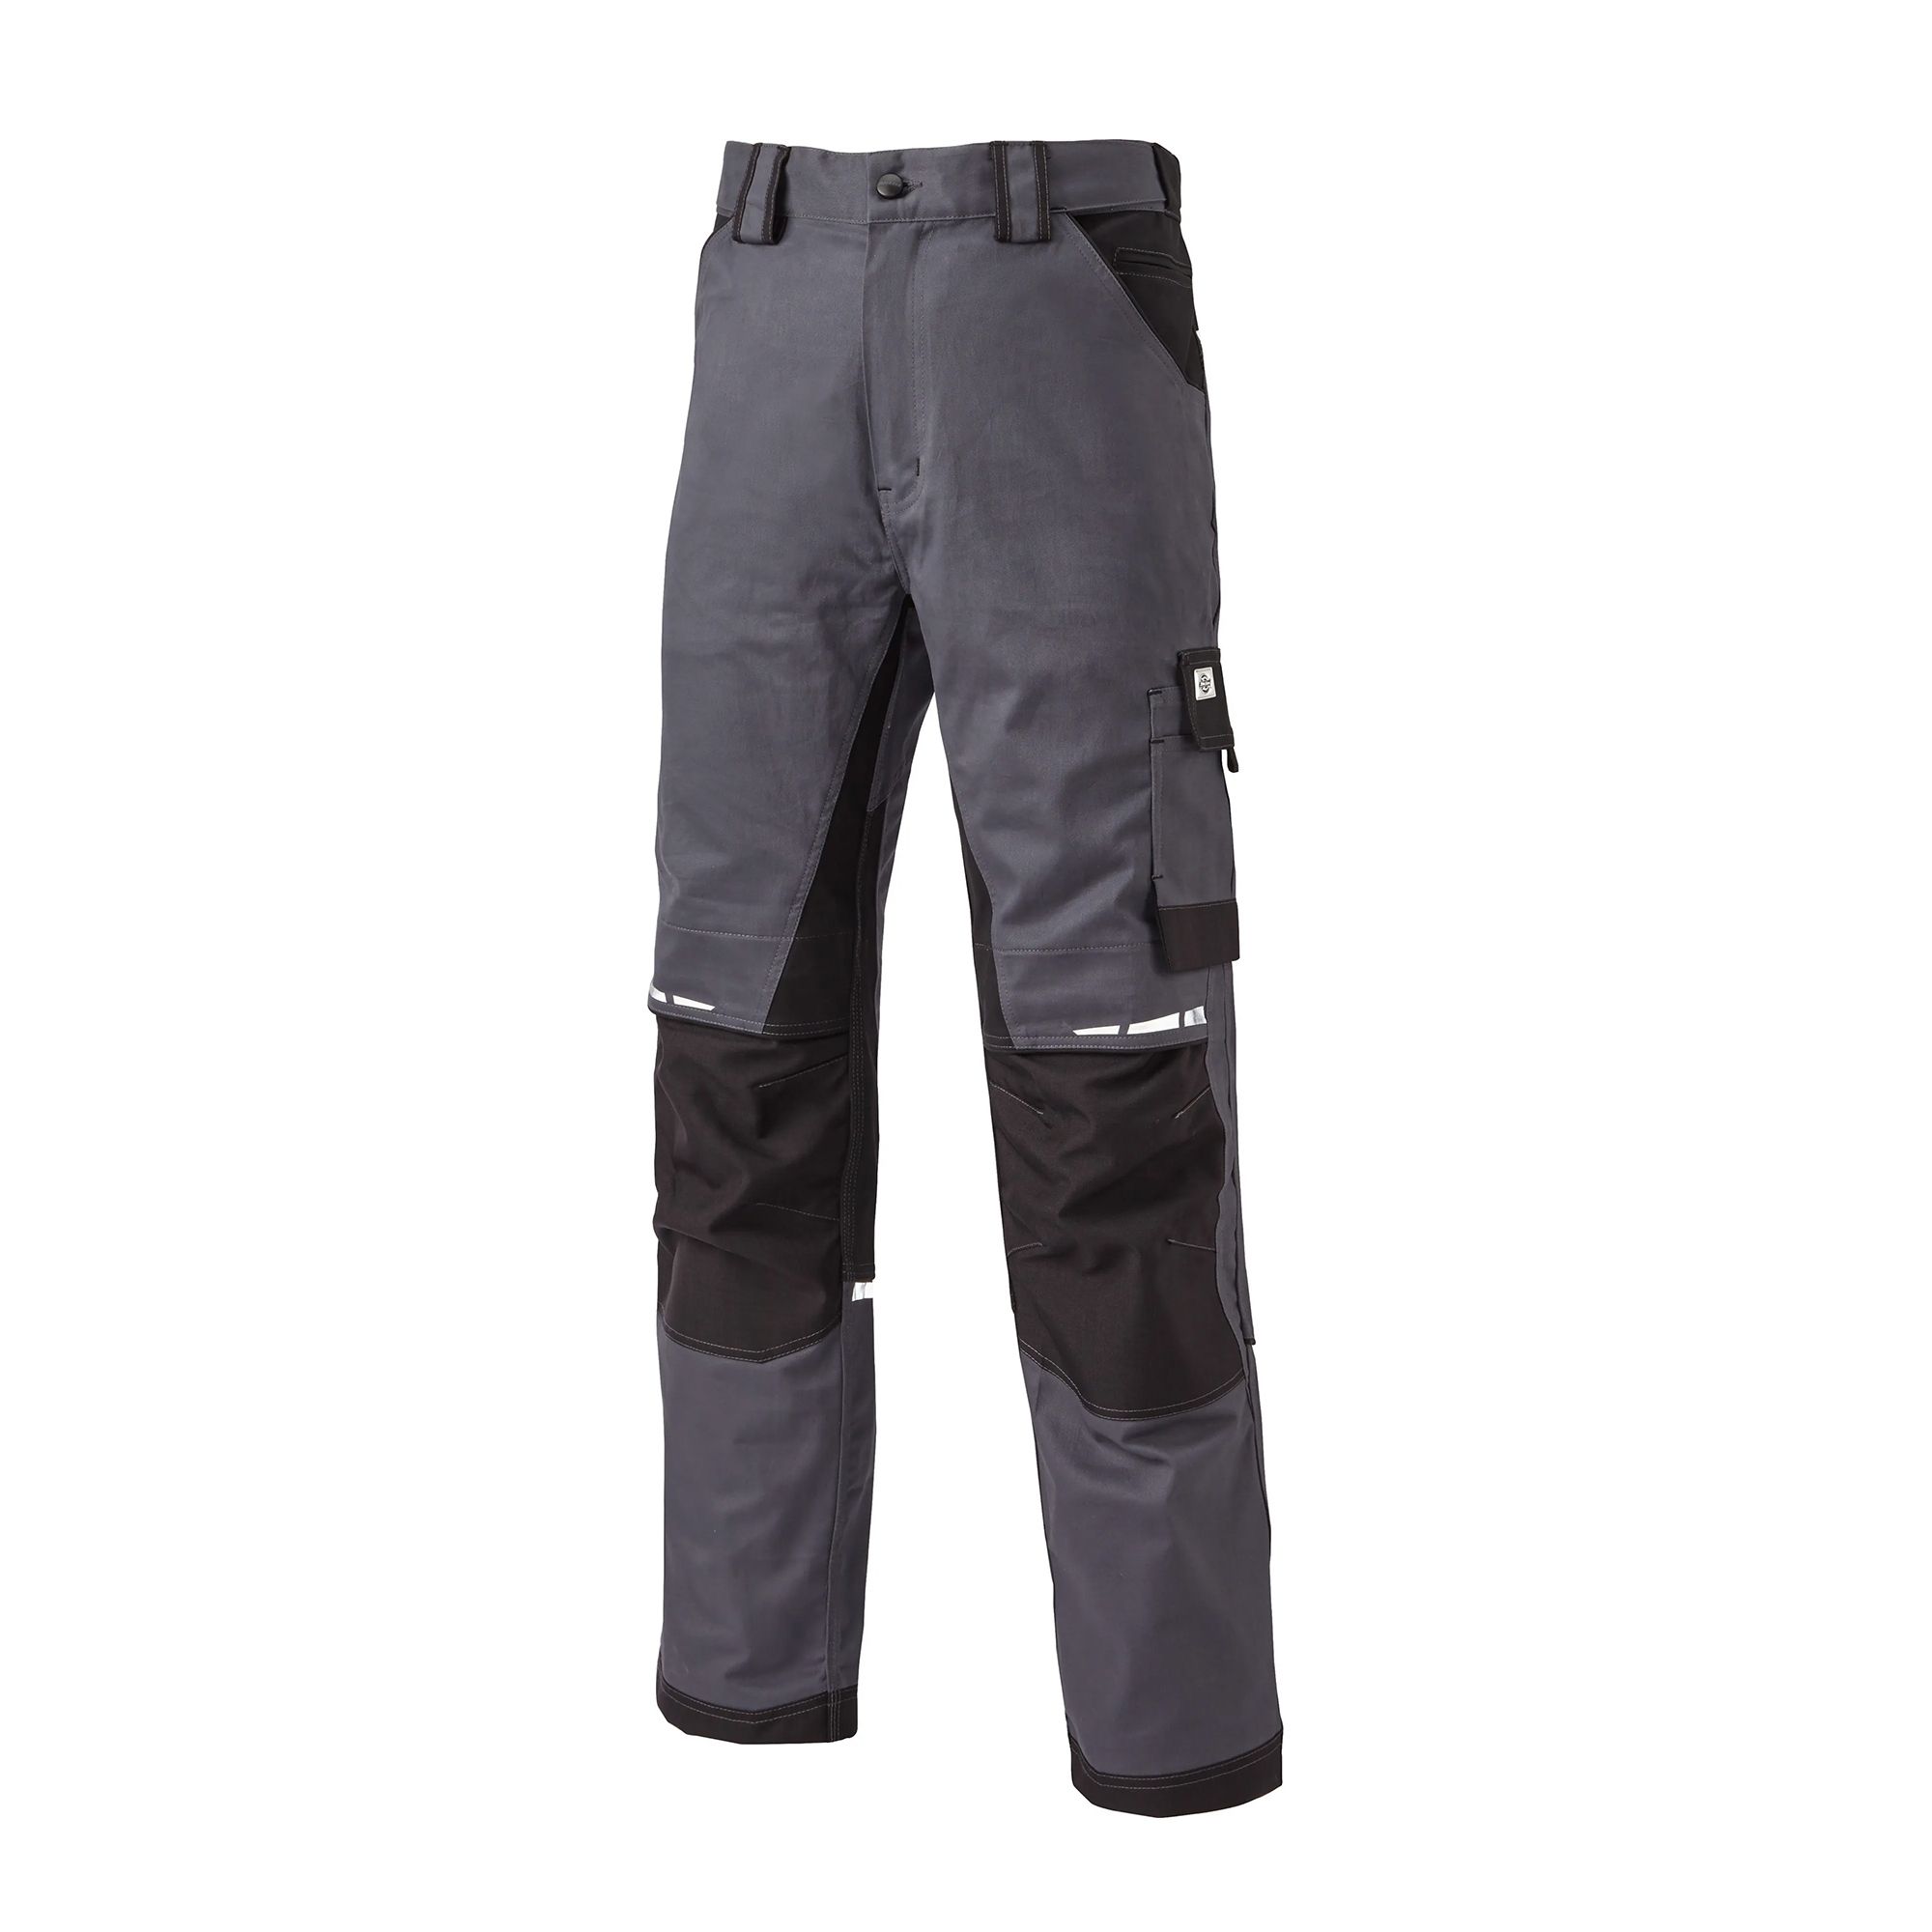 Grey/Black Dickies GDT Premium Workwear Trousers WD4901 